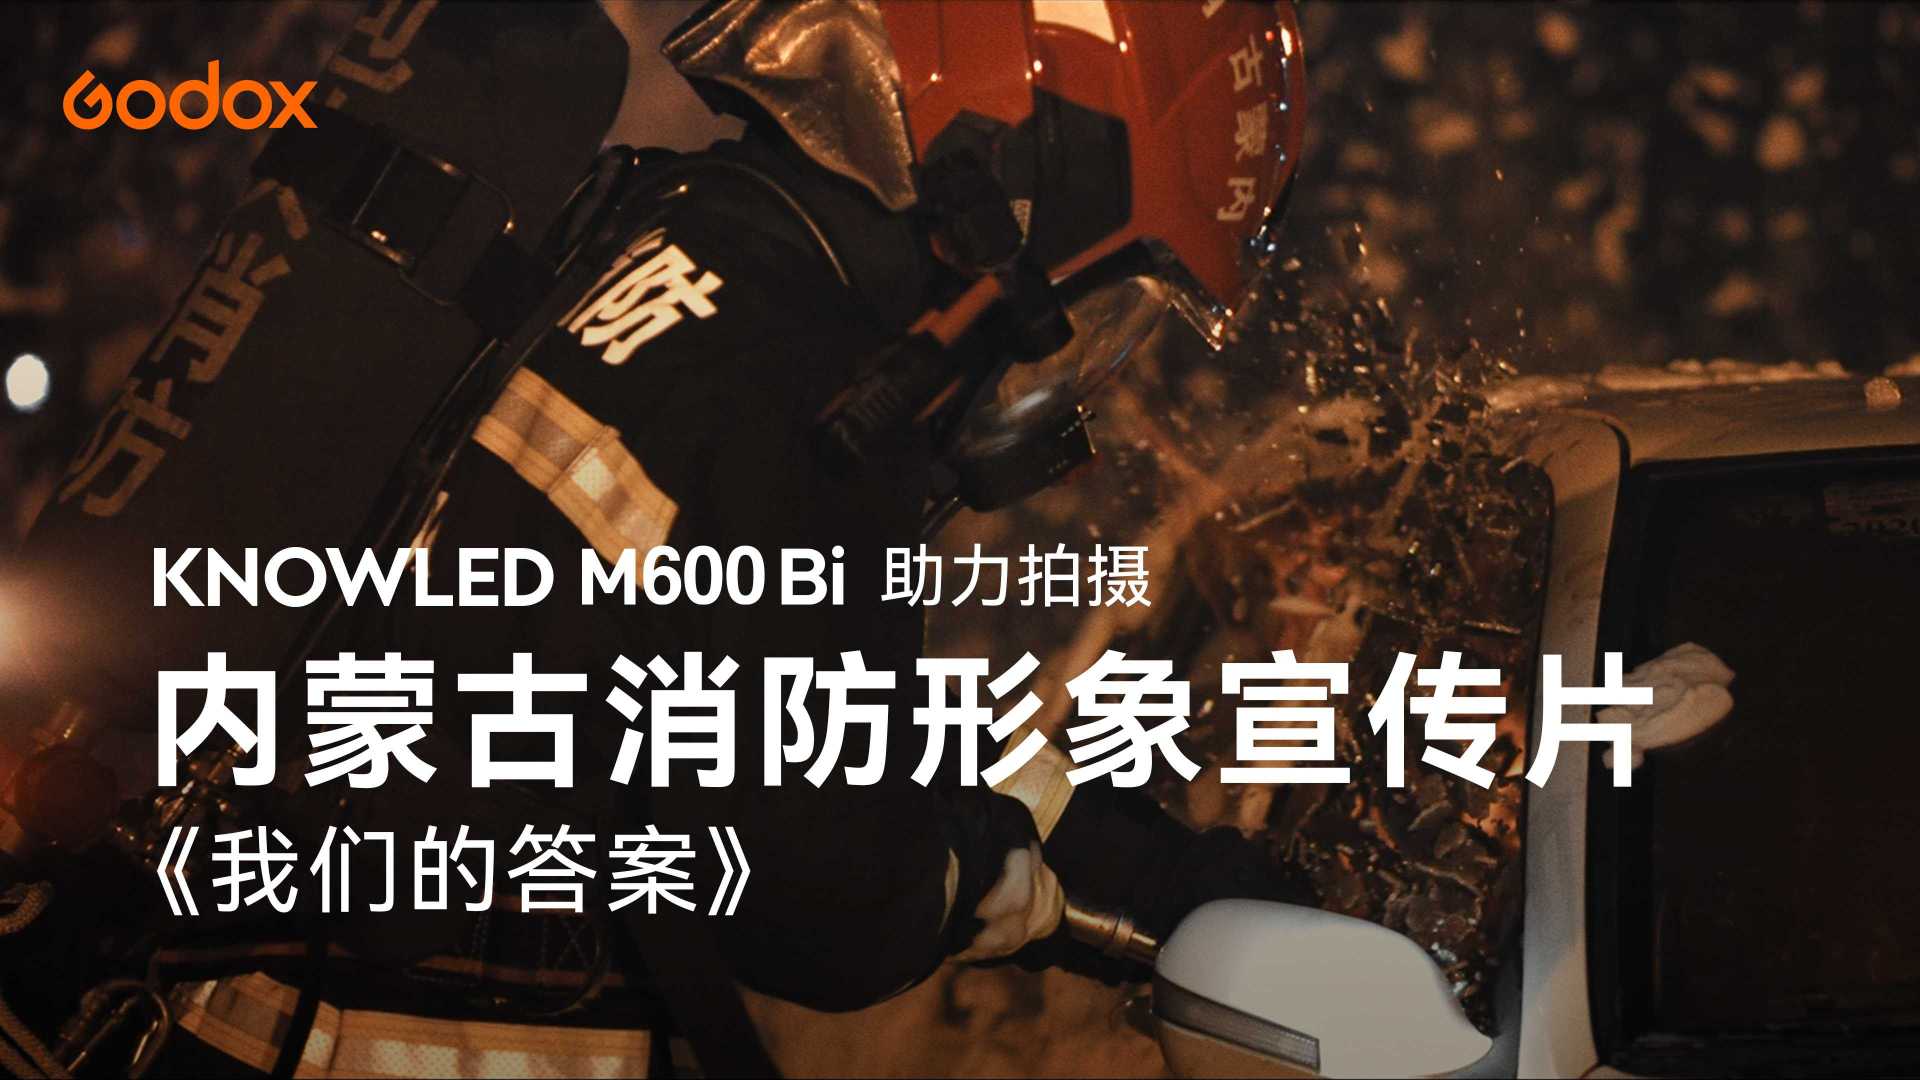 神牛M600Bi助力拍摄--内蒙古消防形象宣传片《我们的答案》